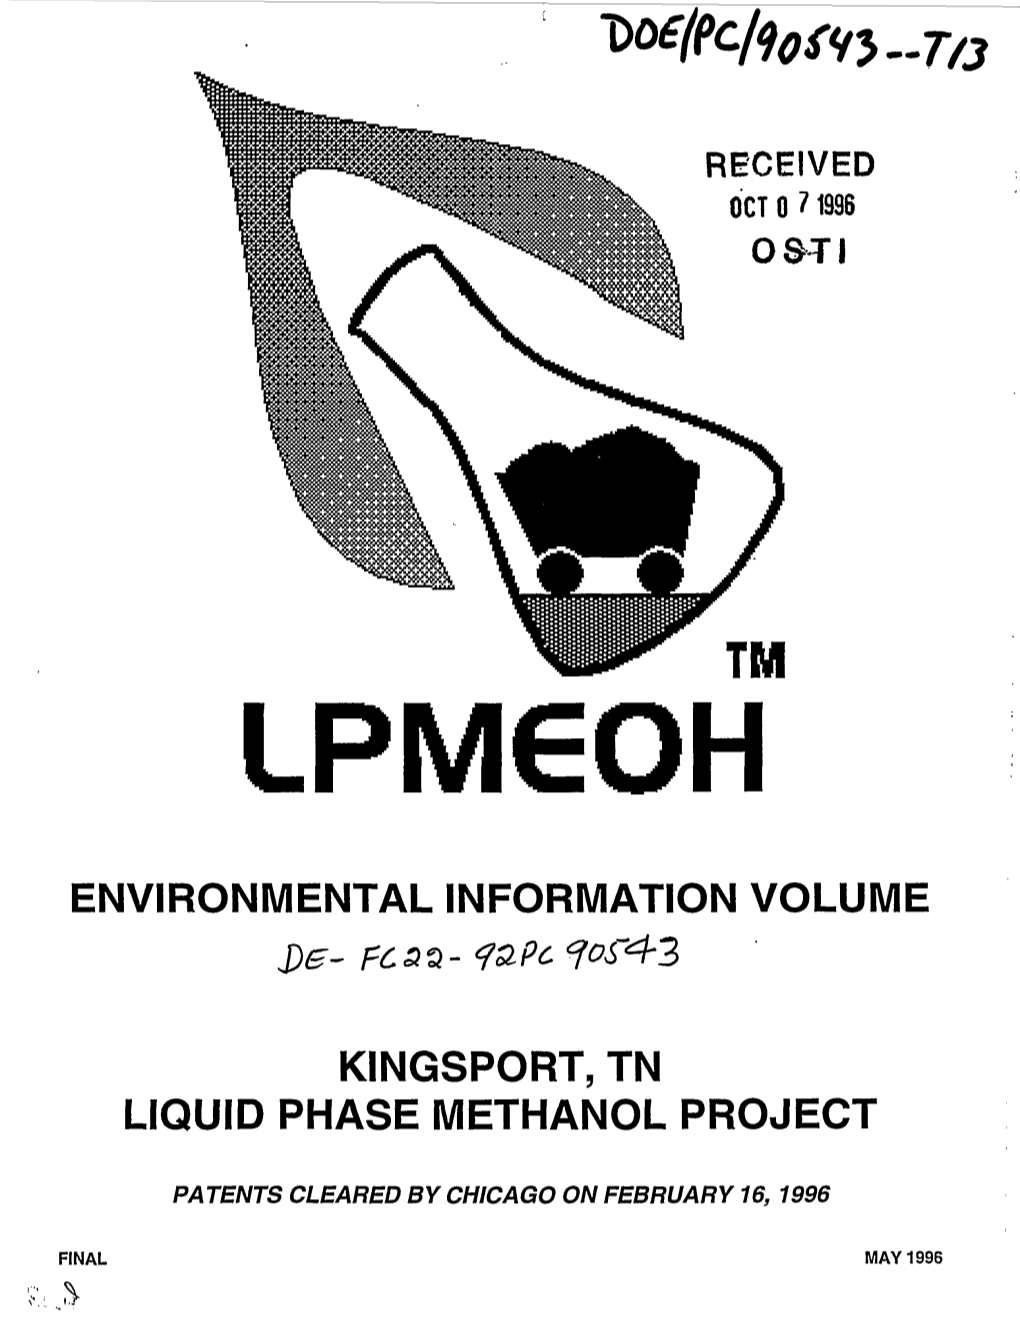 Environmental Information Volume Kingsport, Tn Liquid